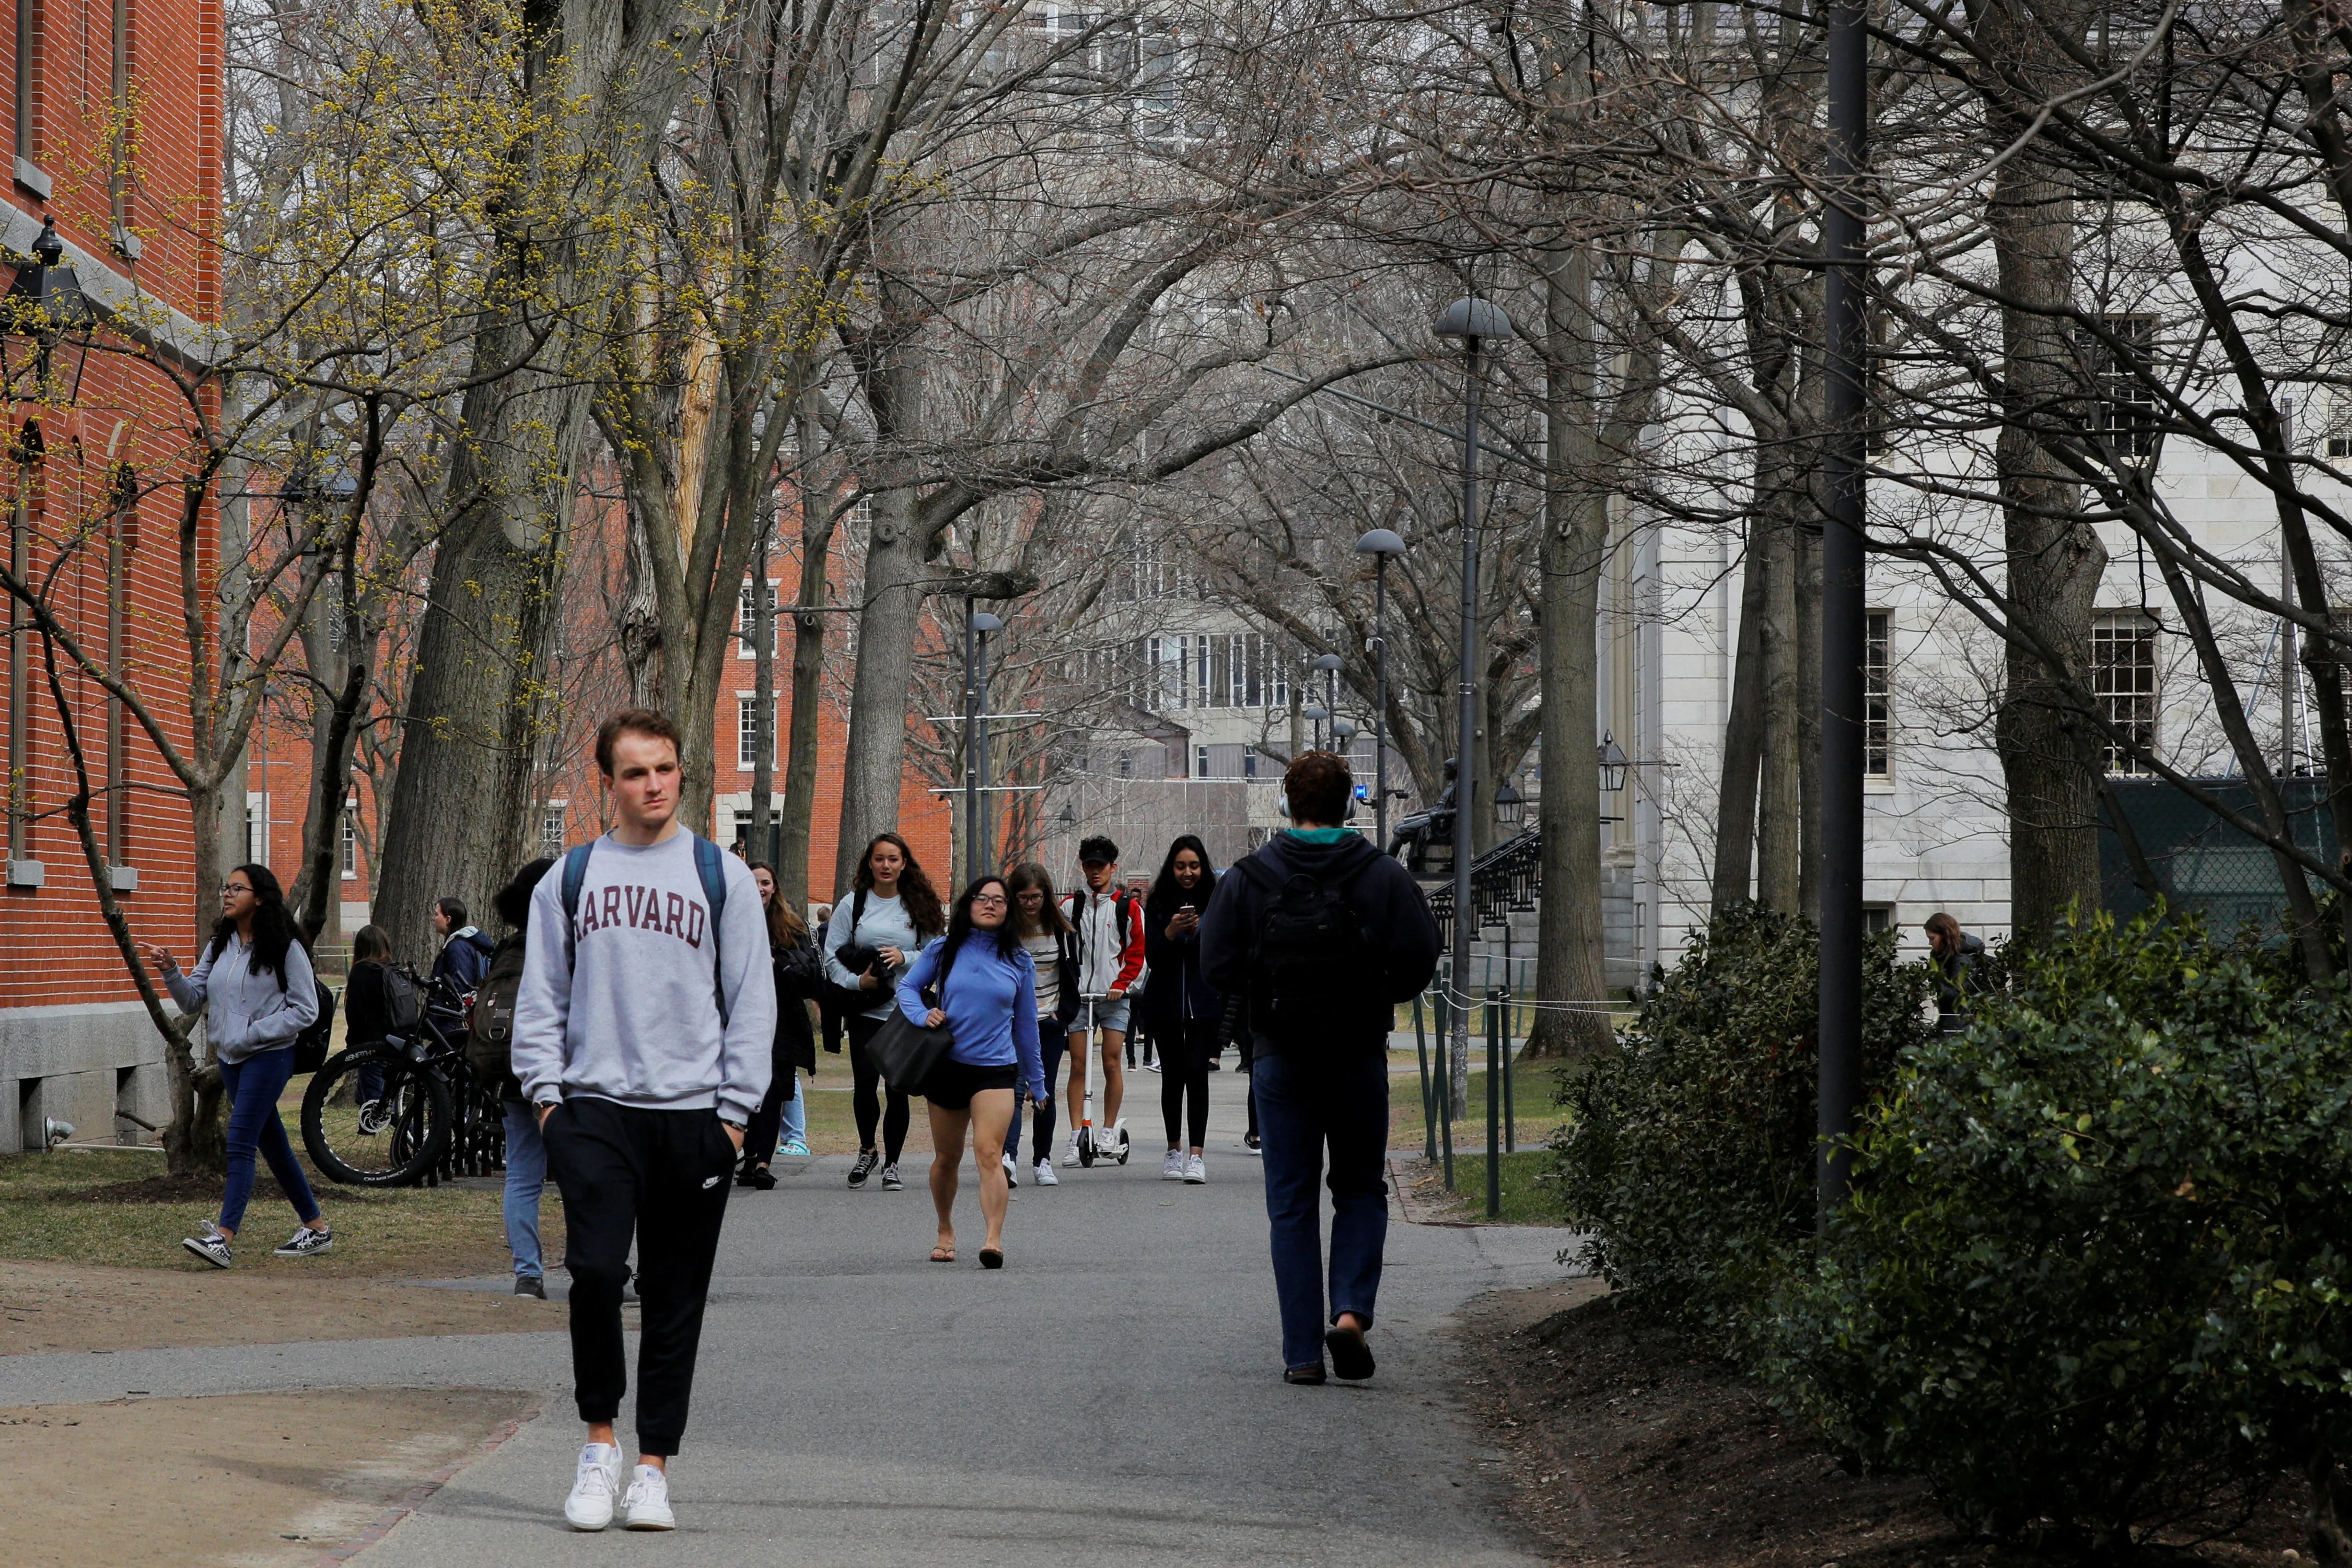 El caso contra Harvard, también decidido el jueves, acusó a la universidad de discriminar a los estudiantes asiático-estadounidenses al emplear estándares subjetivos para limitar el número de estudiantes aceptados (REUTERS/Brian Snyder/File Photo)